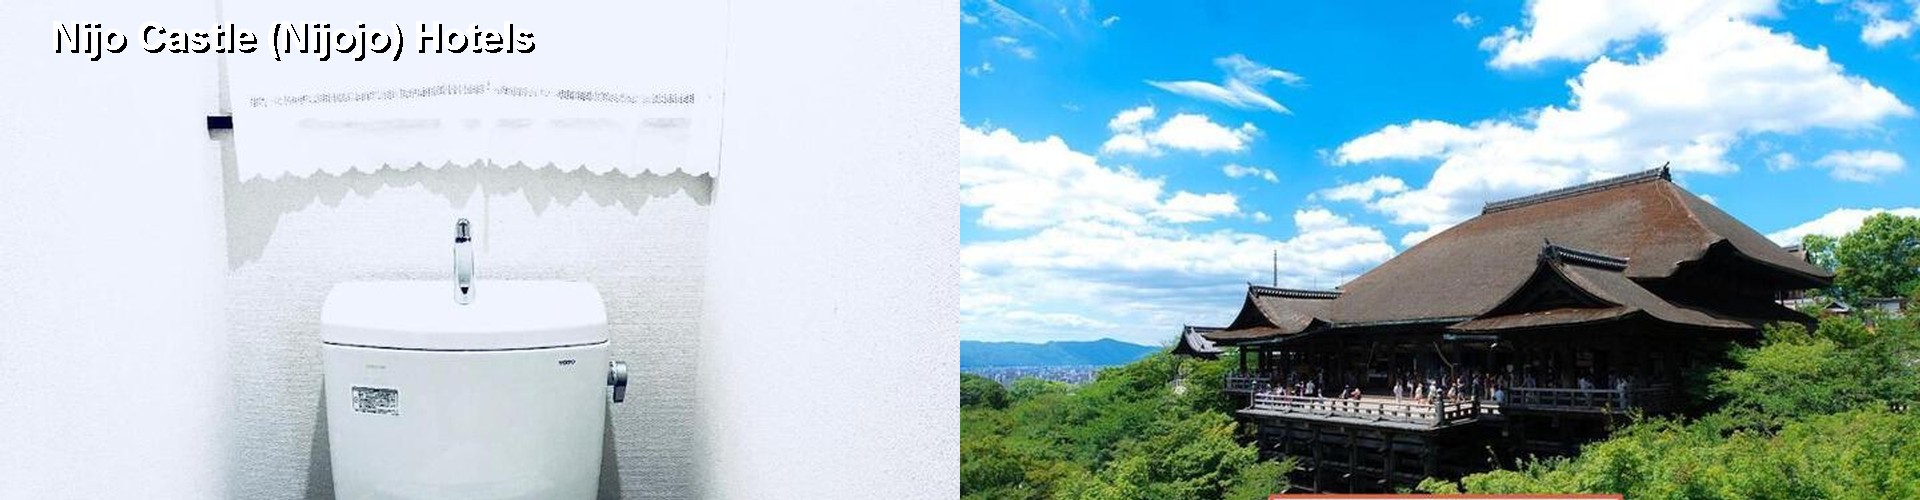 4 Best Hotels near Nijo Castle (Nijojo)